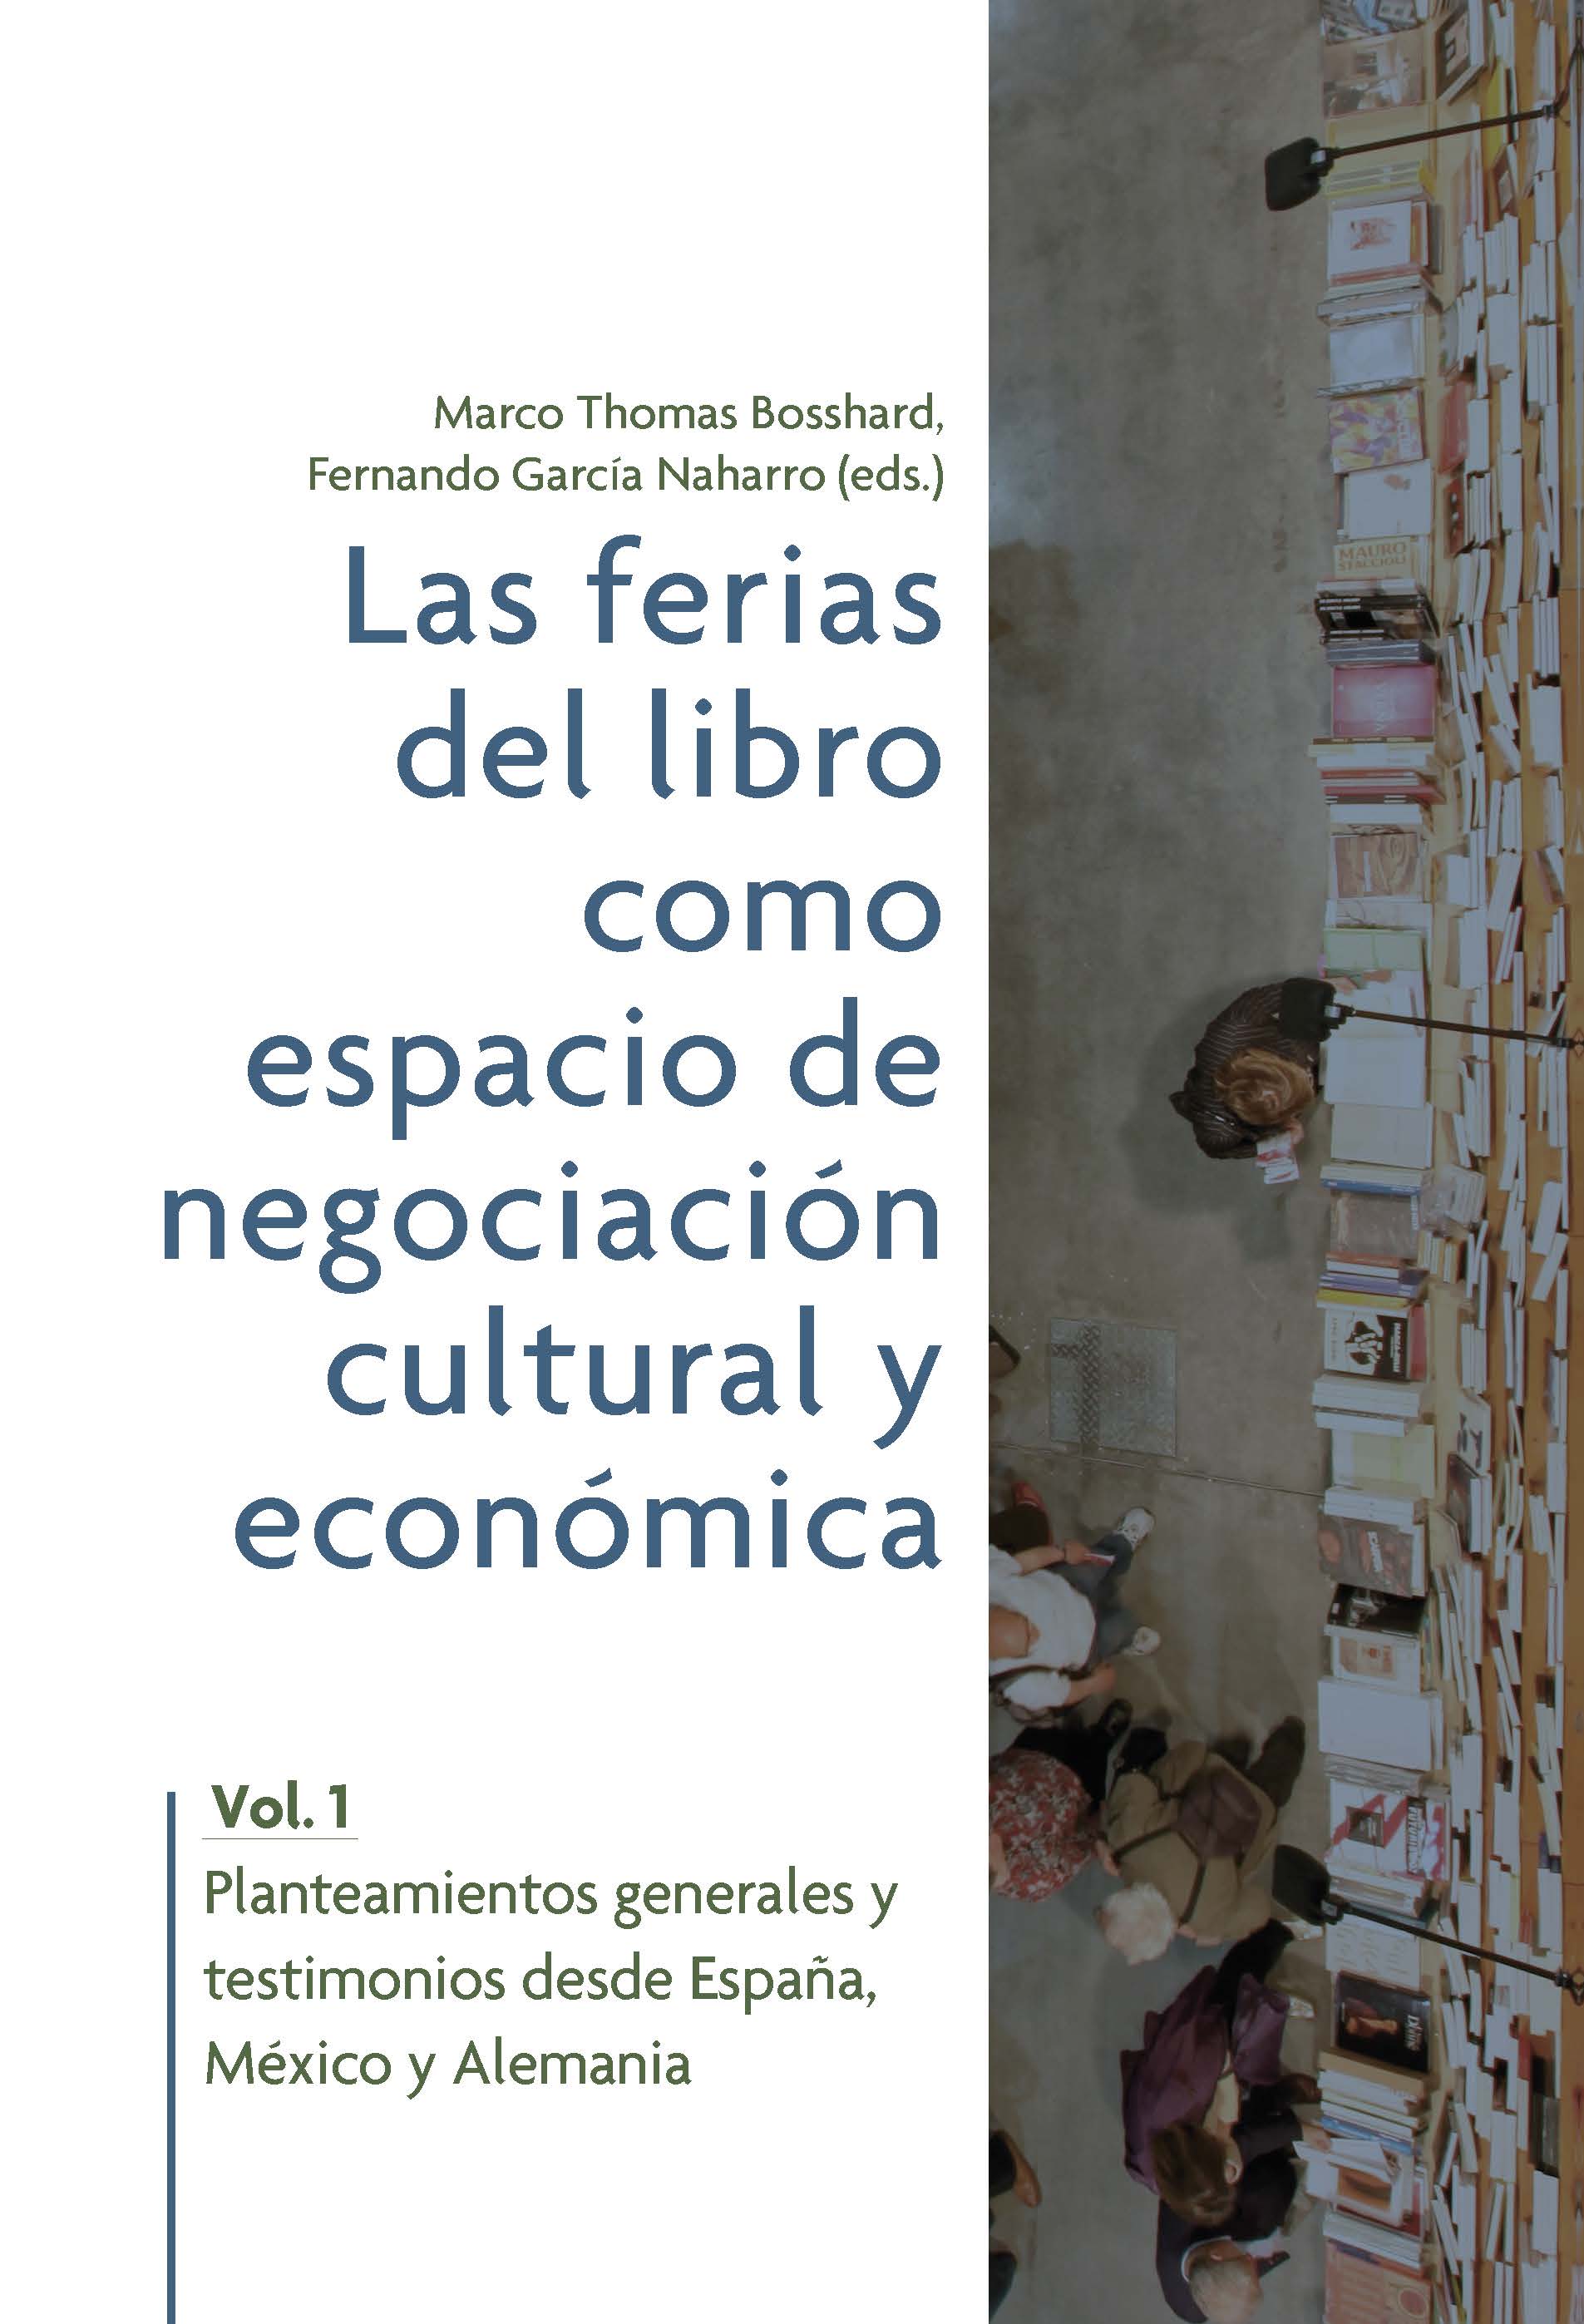 Las ferias del libro como espacios de negociación cultural  y económica